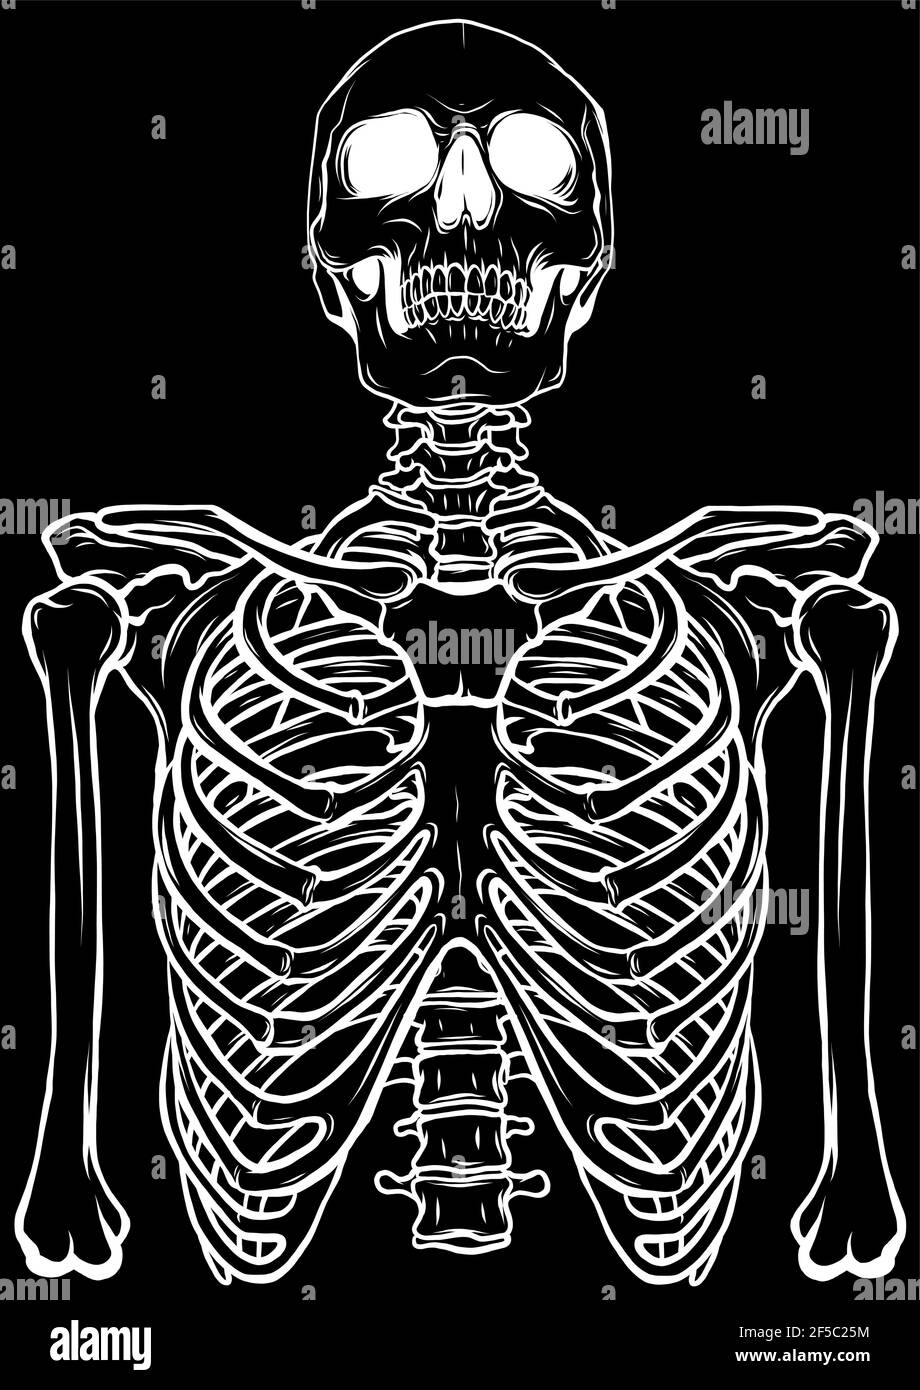 Skeletons Family Black Wallpapers  Skeleton Wallpaper for iPhone